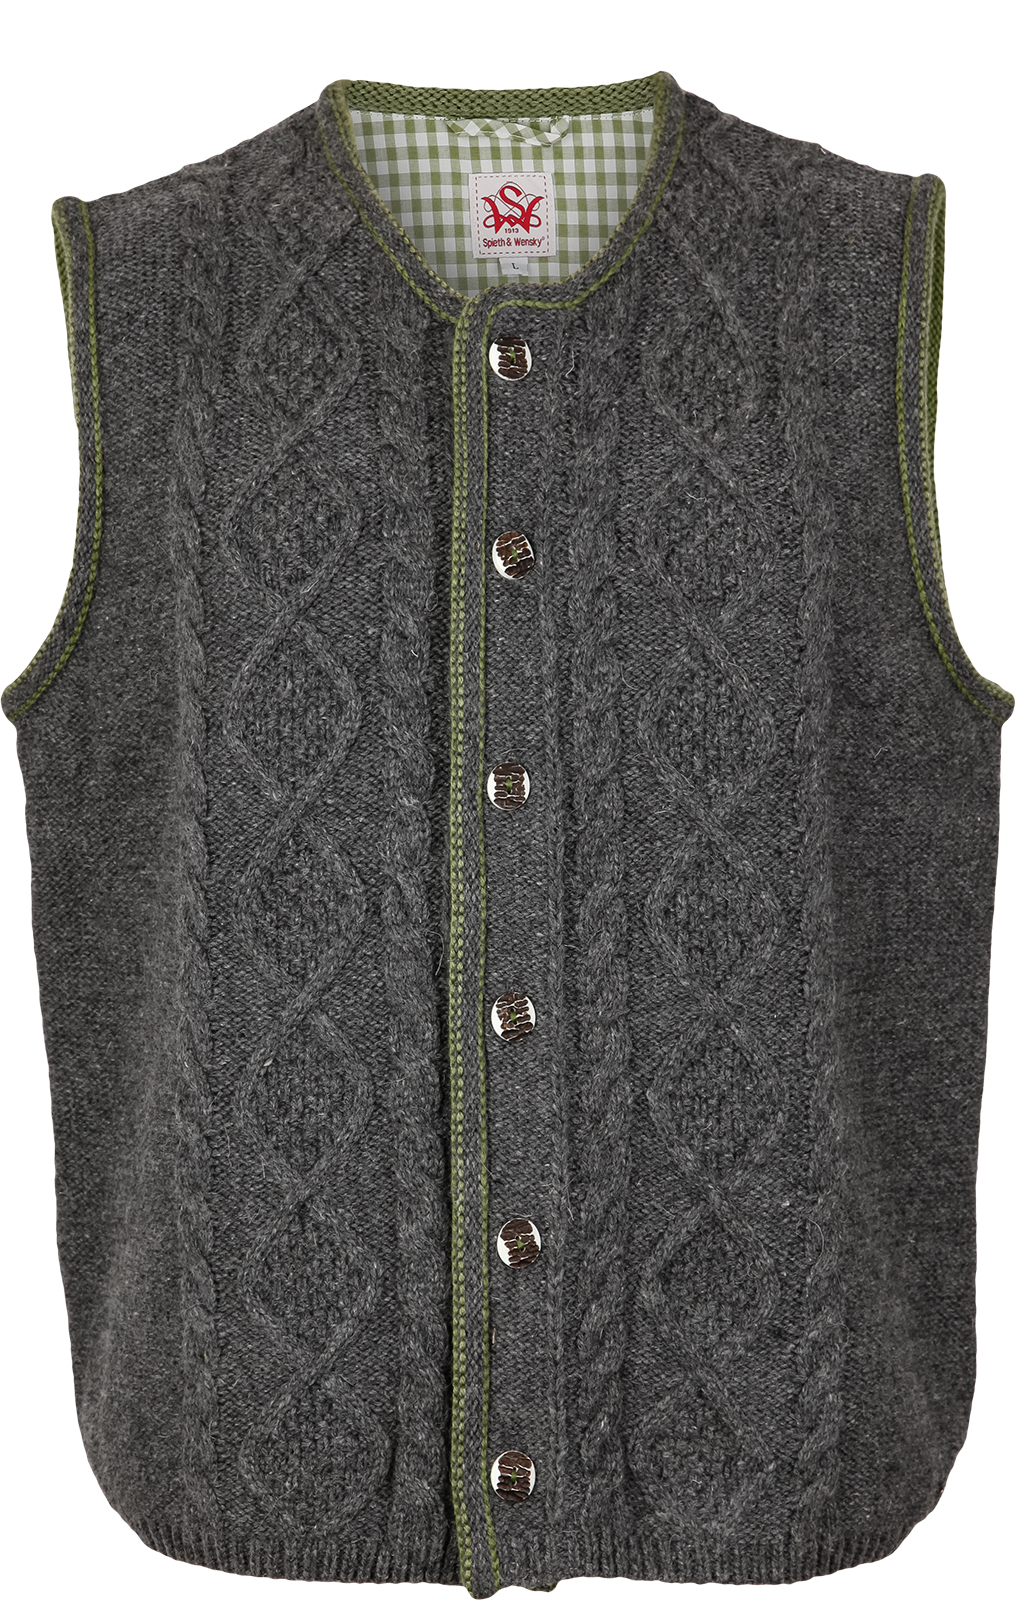 weitere Bilder von German knitted waistcoat ERMELO middle gray